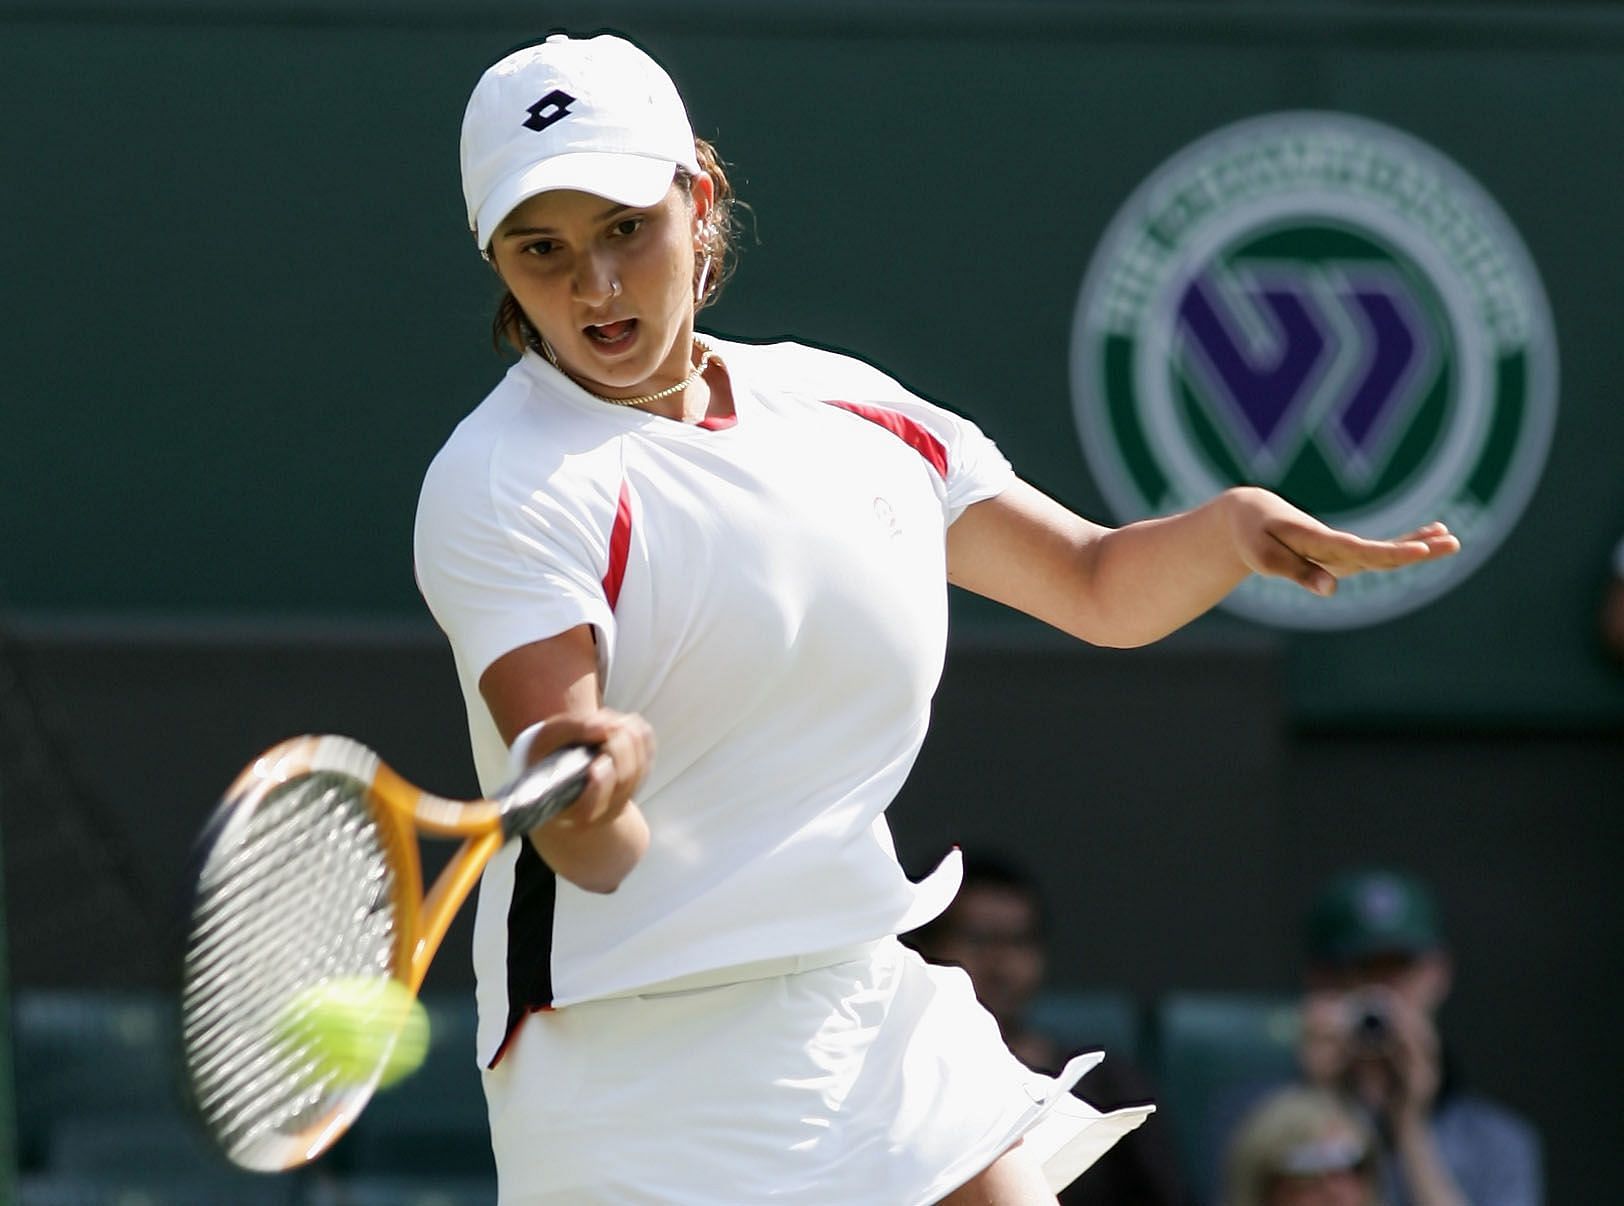 Sania Mirza in action at Wimbledon